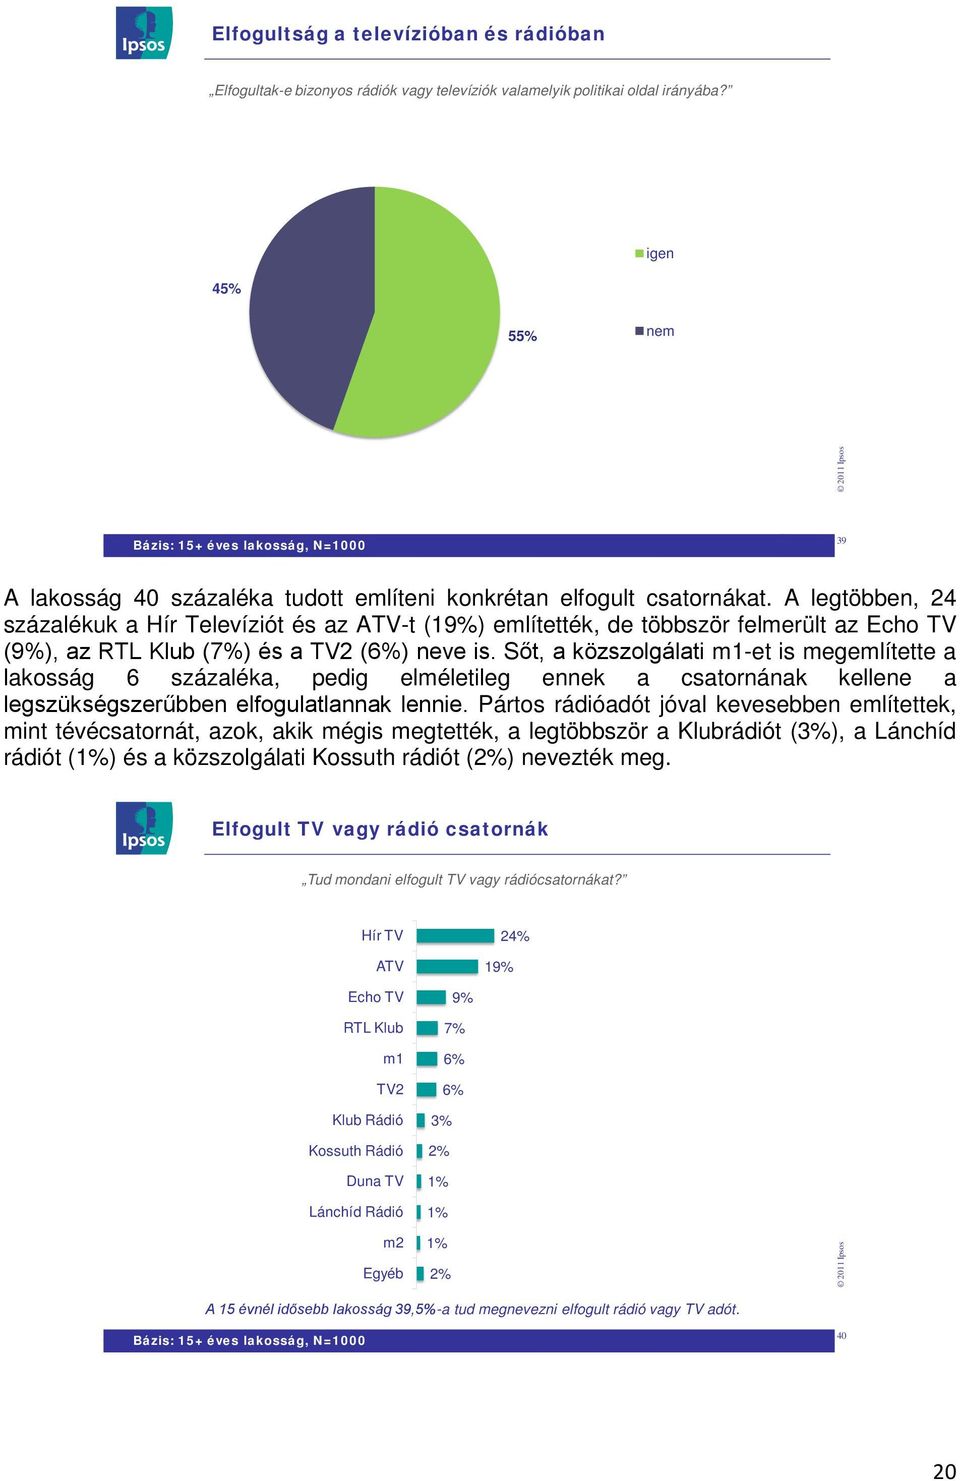 A legtöbben, 24 százalékuk a Hír Televíziót és az ATV-t (19%) említették, de többször felmerült az Echo TV (9%), az RTL Klub (7%) és a TV2 (6%) neve is.